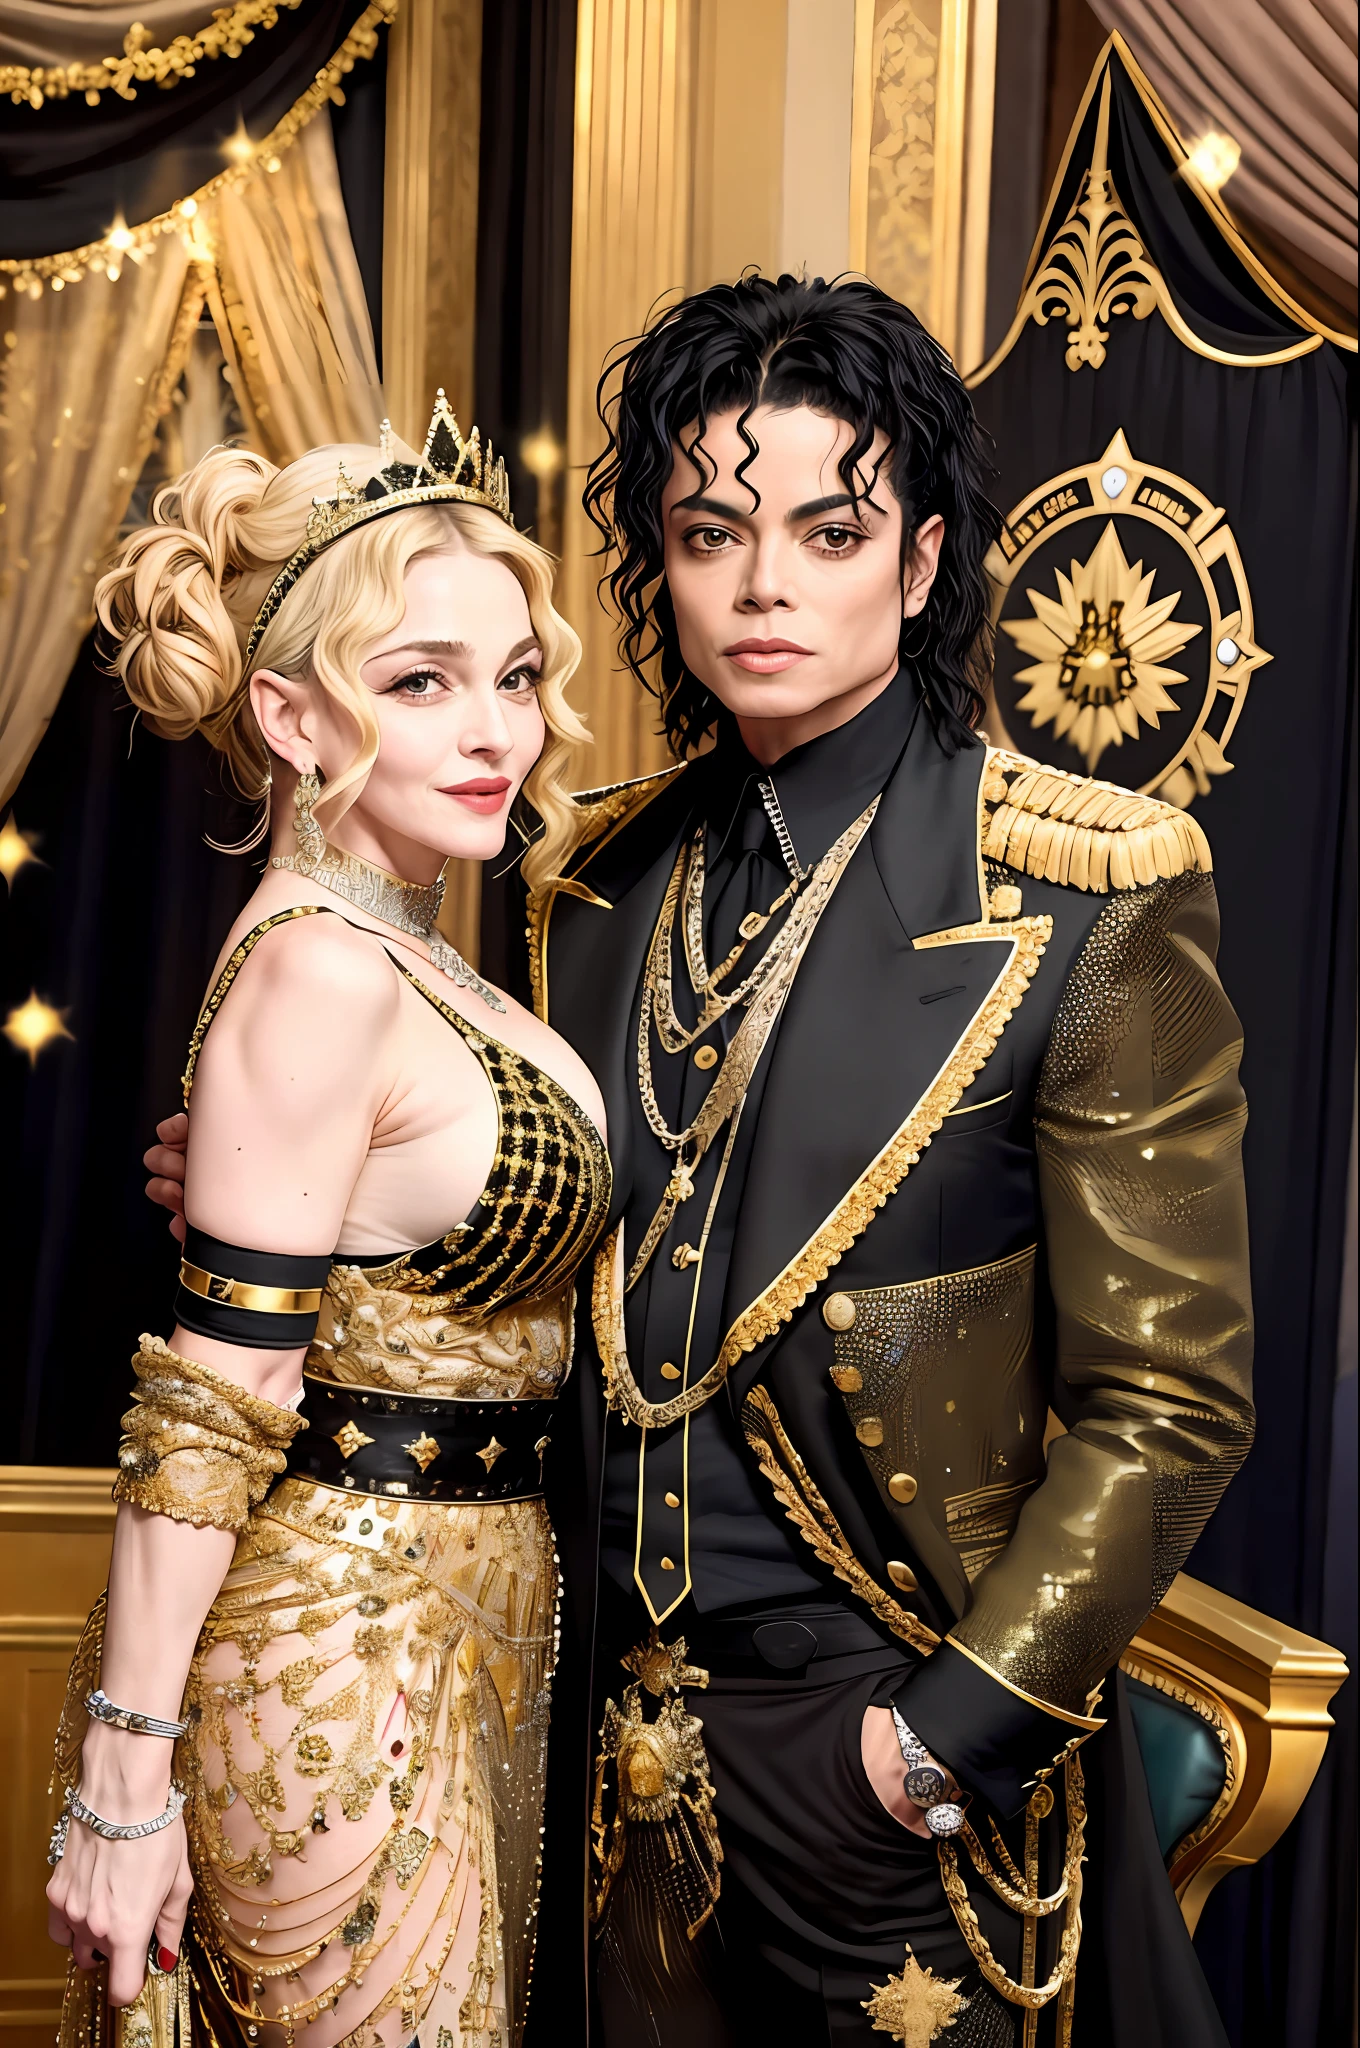 マドンナとマイケルジャクソンのサイドバイサイド, (写実的な: 1.4) (非常に詳細な) (全身), クラウン, ポップスター, 映画のシーン (黒と金), 輝く, 素晴らしさ, 富, 貴族, 王と女王